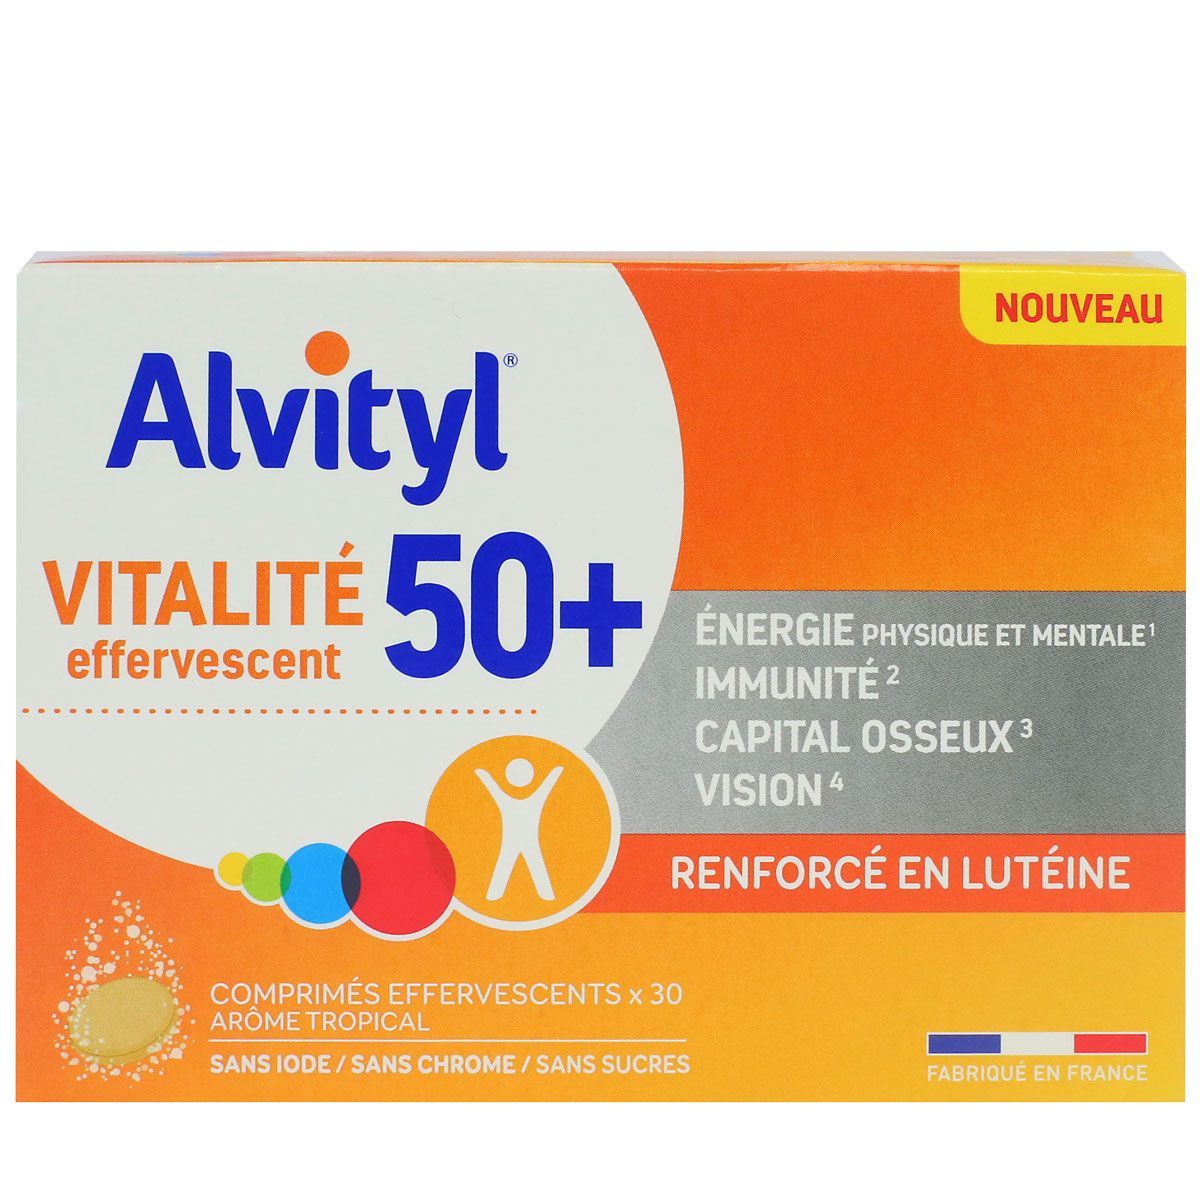 ALVITYL Vitalité 40 comprimés à avaler - Parapharmacie - Pharmarket